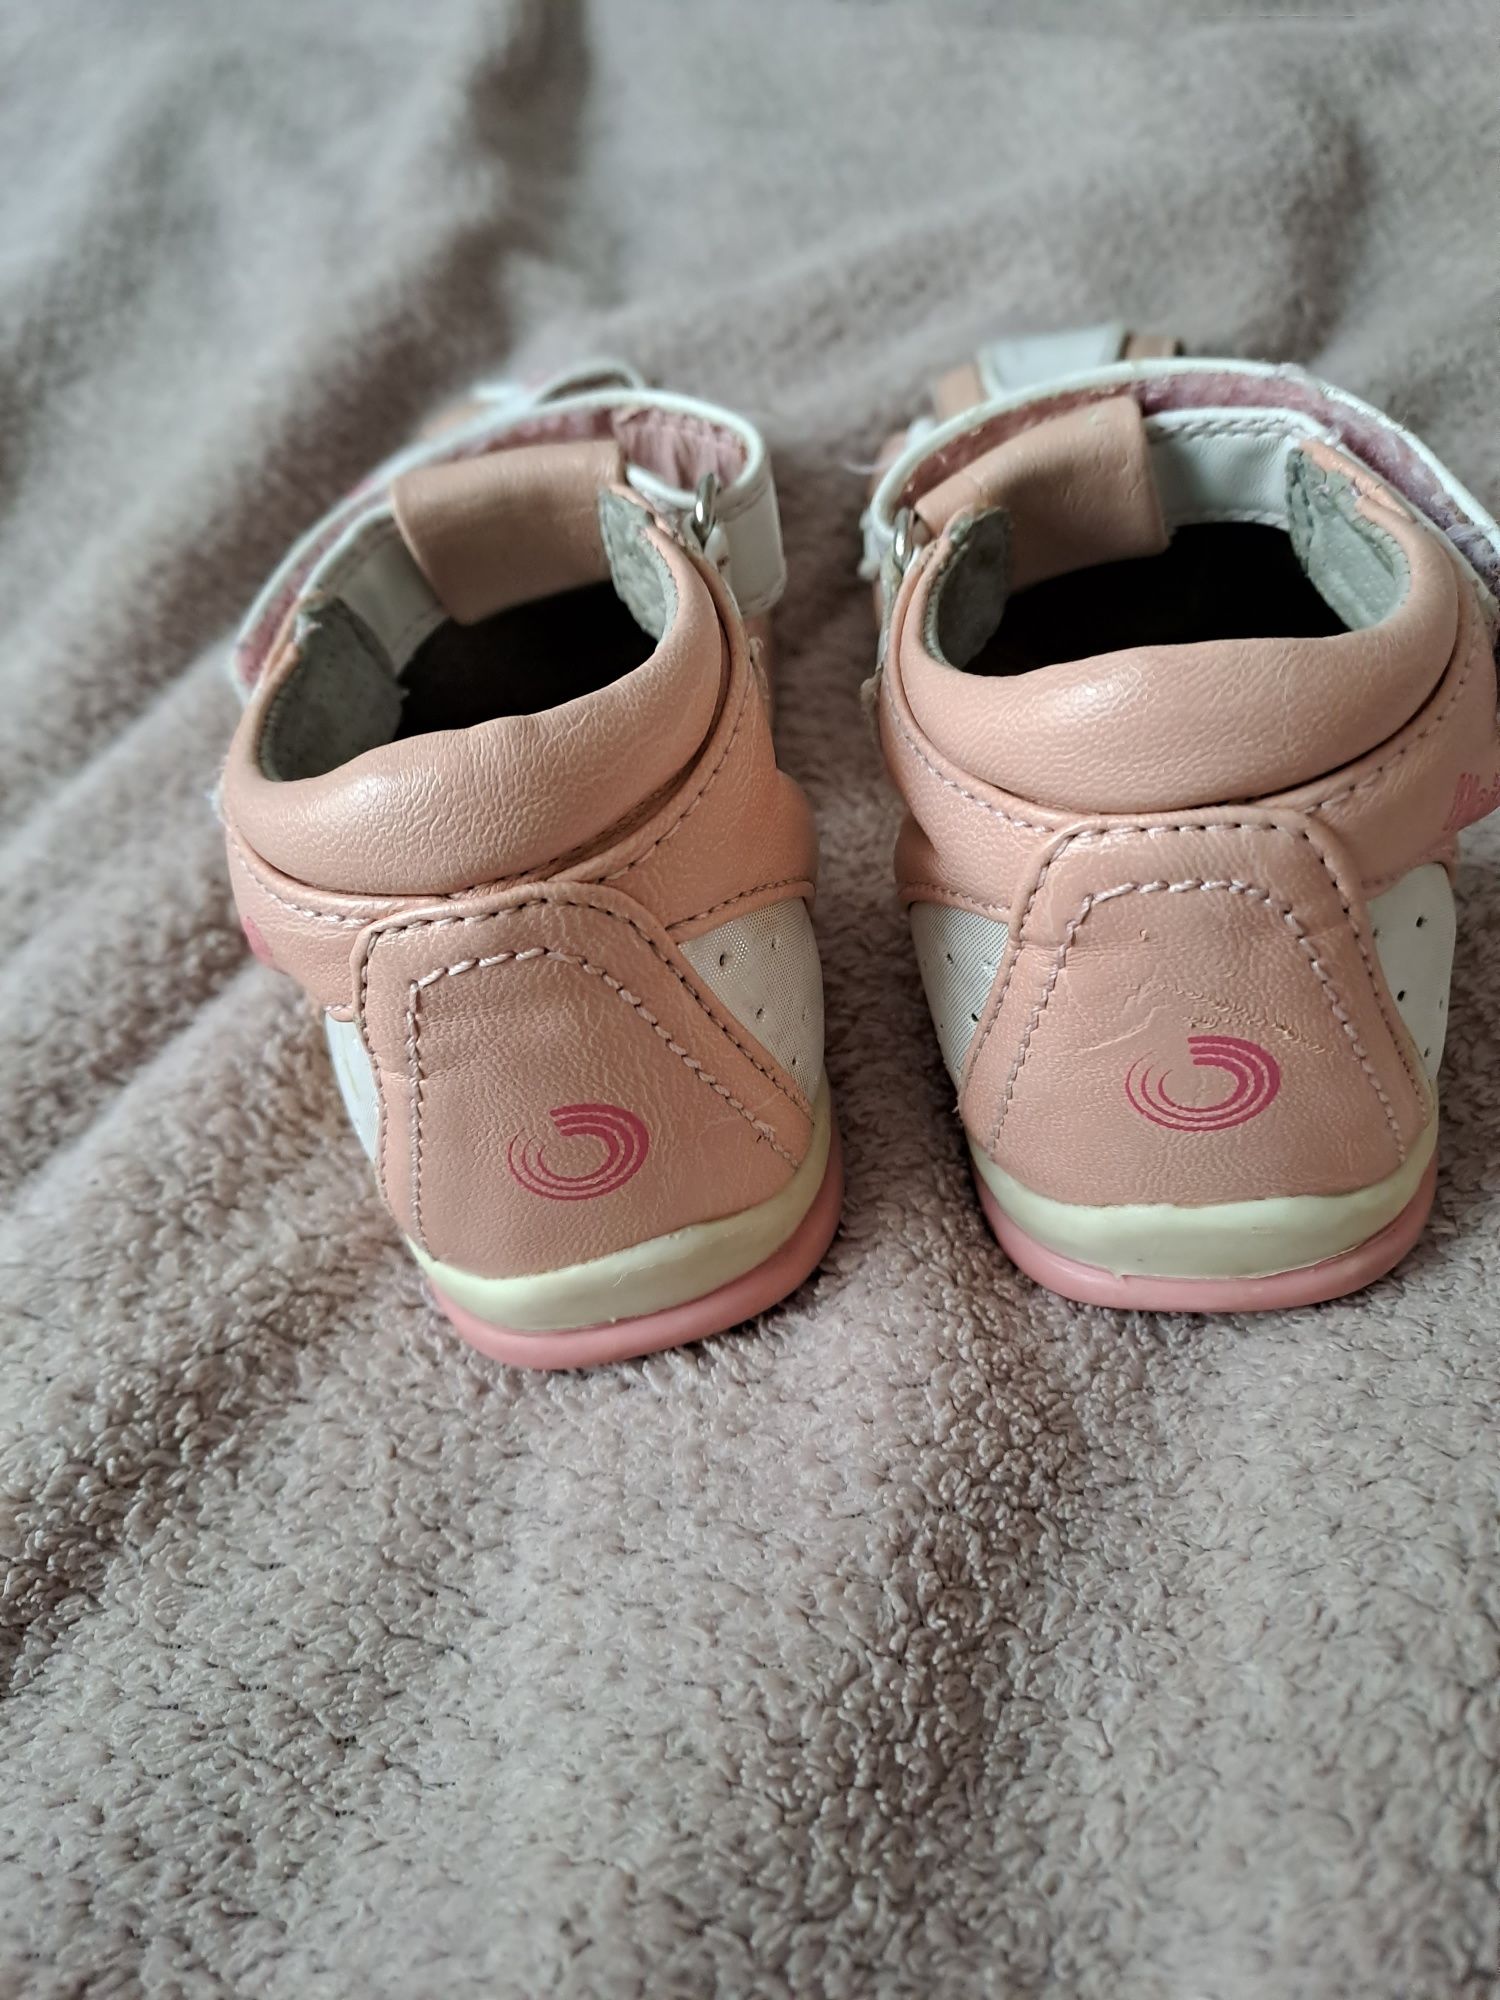 Sandałki dla dziewczynki,  białe różowe, rozmiar 27, wkładka  16cm